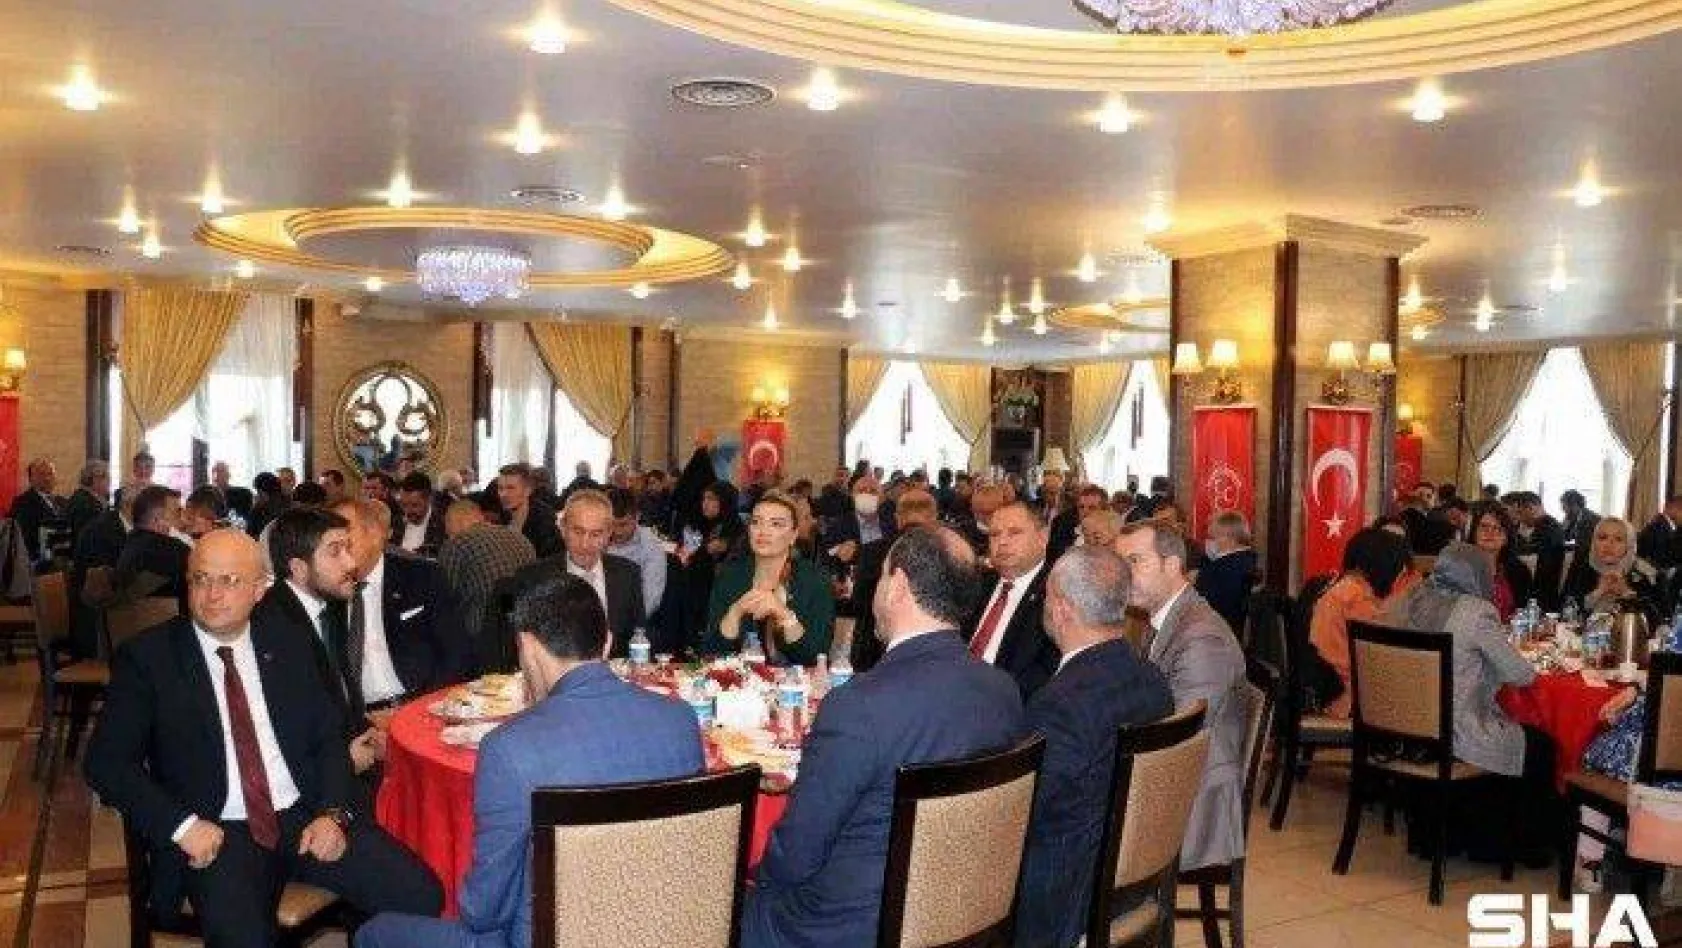 MHP Grup Başkanvekili Bülbül: &quotDünyadaki sıkıntıları görmezden gelerek bir şeyleri izah etmek veya eleştiri yapmak insafsızlıktır'